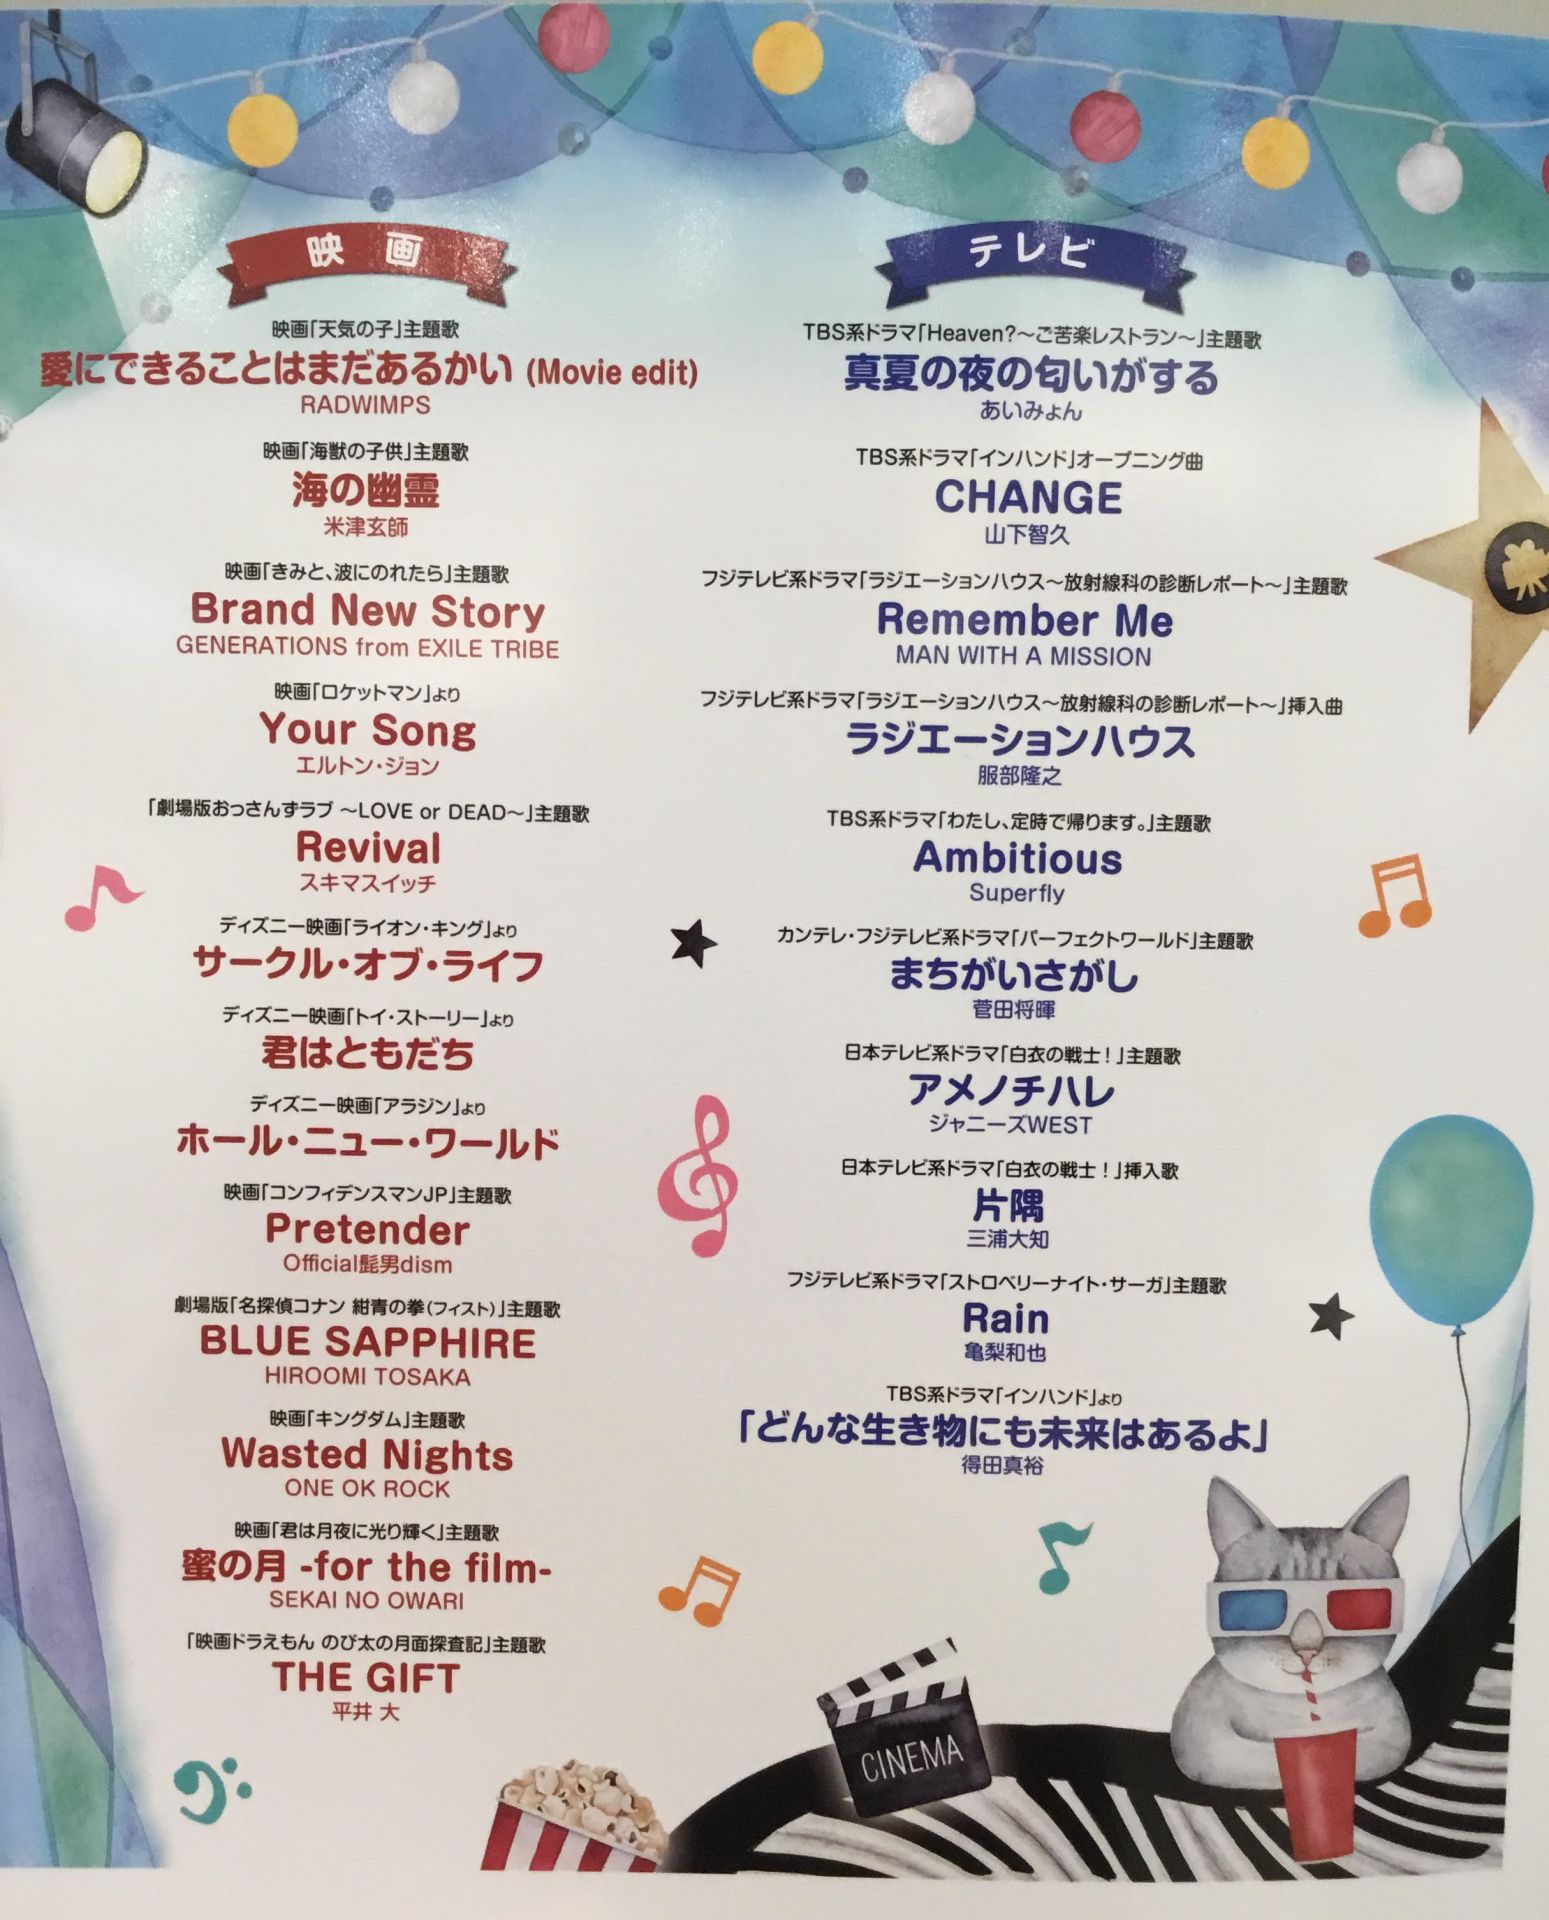 楽譜 ピアノ 人気映画 テレビ19夏 10月5日更新 イオンモール大日店 店舗情報 島村楽器